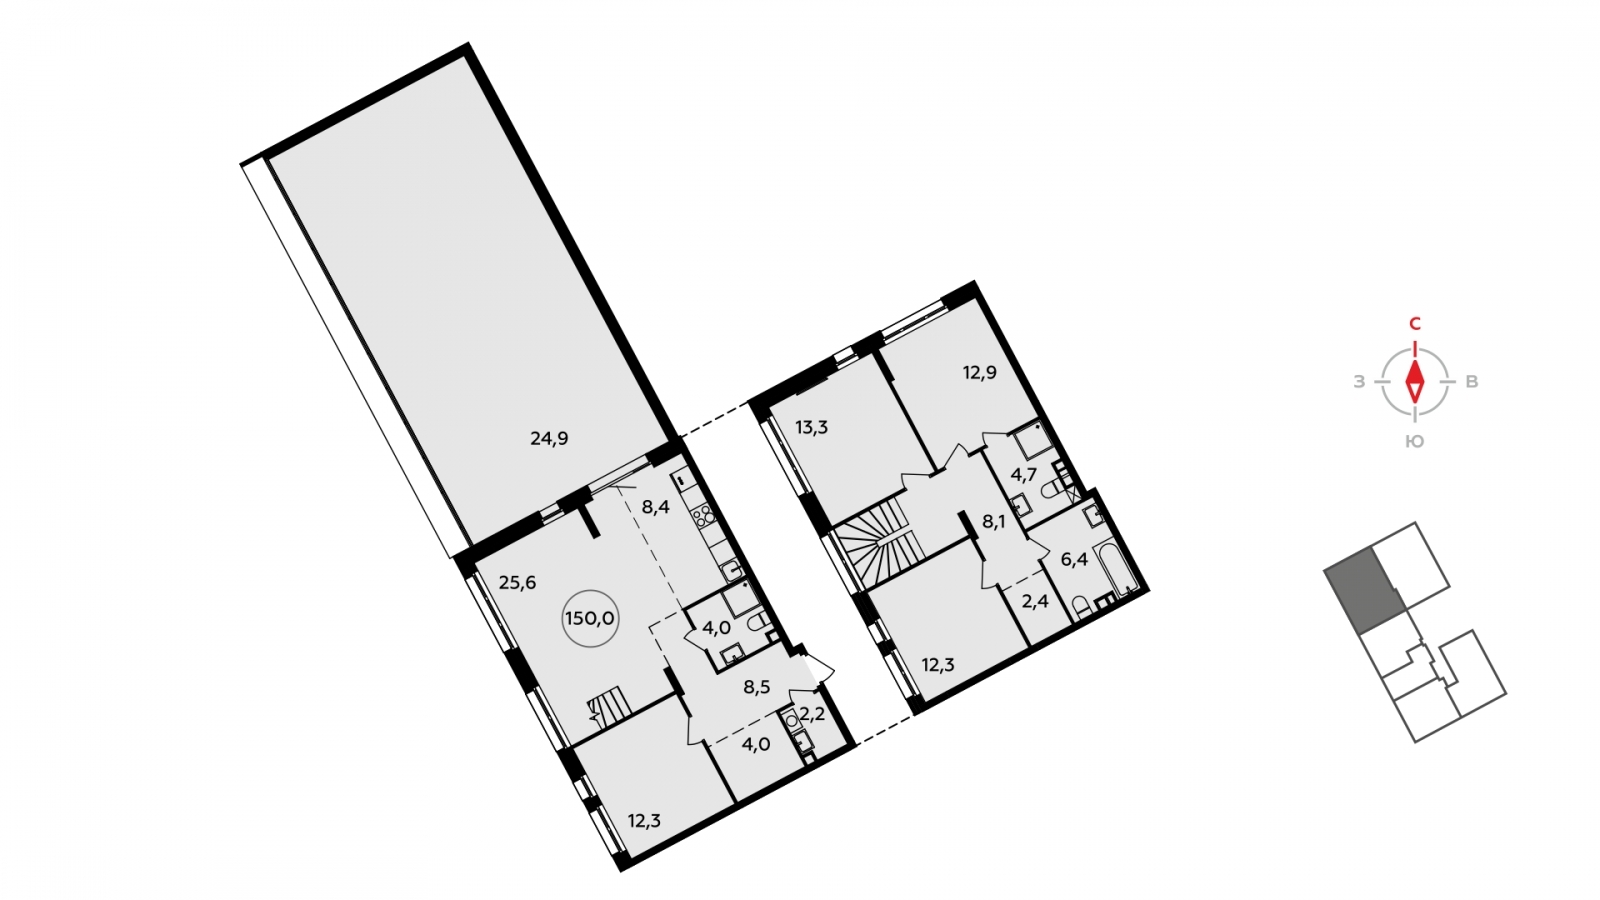 Продается 2-уровневая 5-комнатная квартира с европланировкой с террасой в новом жилом комплексе, дом сдан, рядом с метро